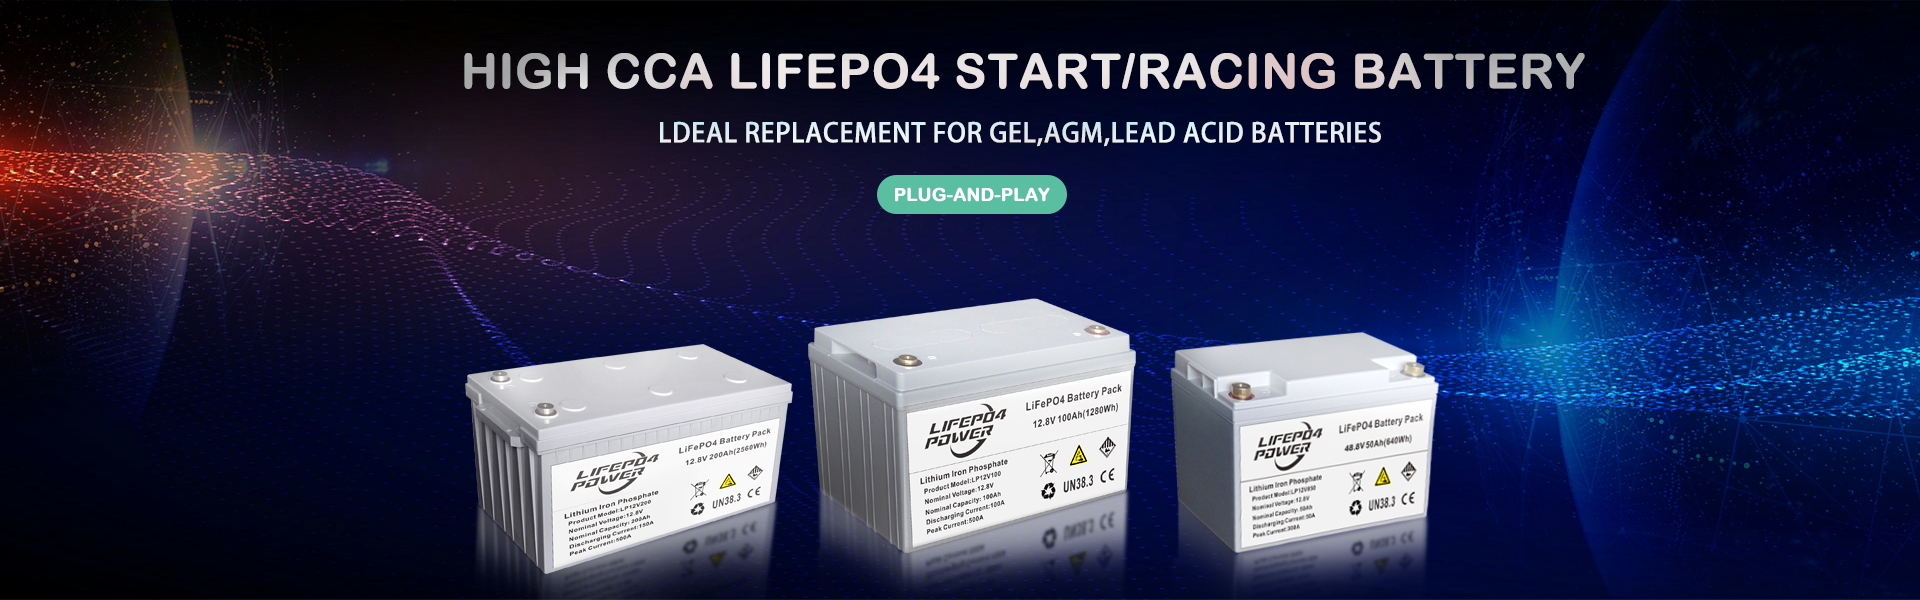 عالية CCA LiFePO4 بدء / سباق بطارية التوصيل والتشغيل. بديل مثالي لبطاريات GEL ، AGM ، بطاريات الرصاص الحمضية